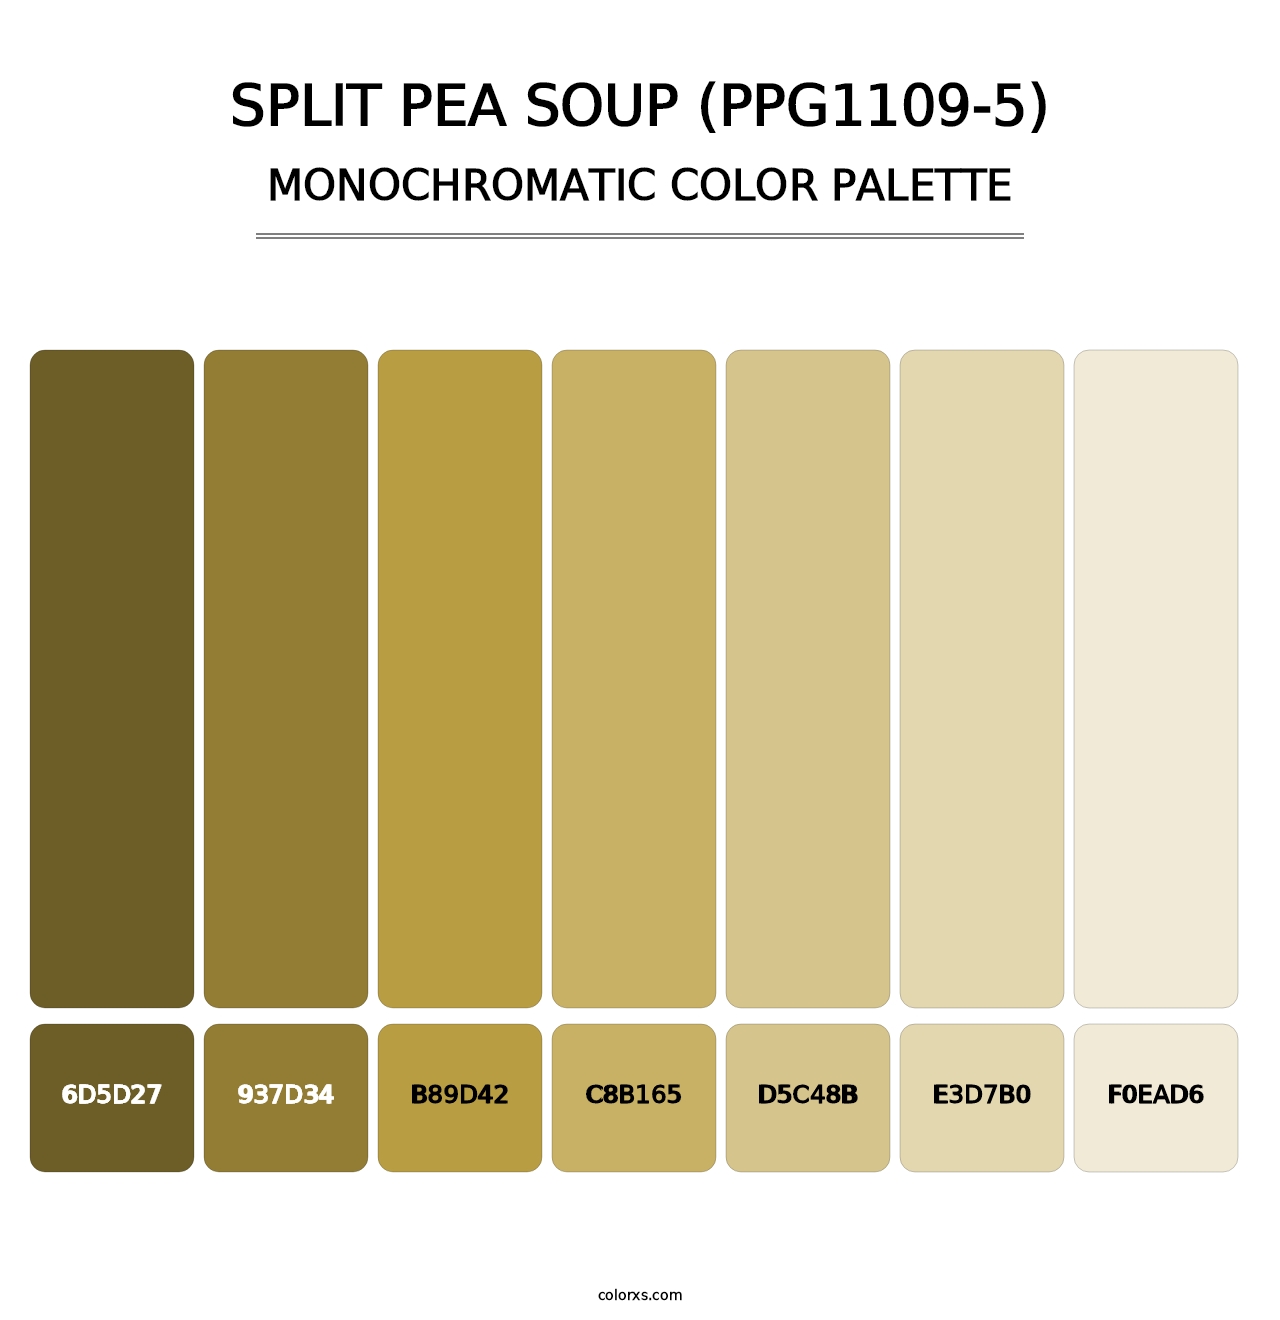 Split Pea Soup (PPG1109-5) - Monochromatic Color Palette